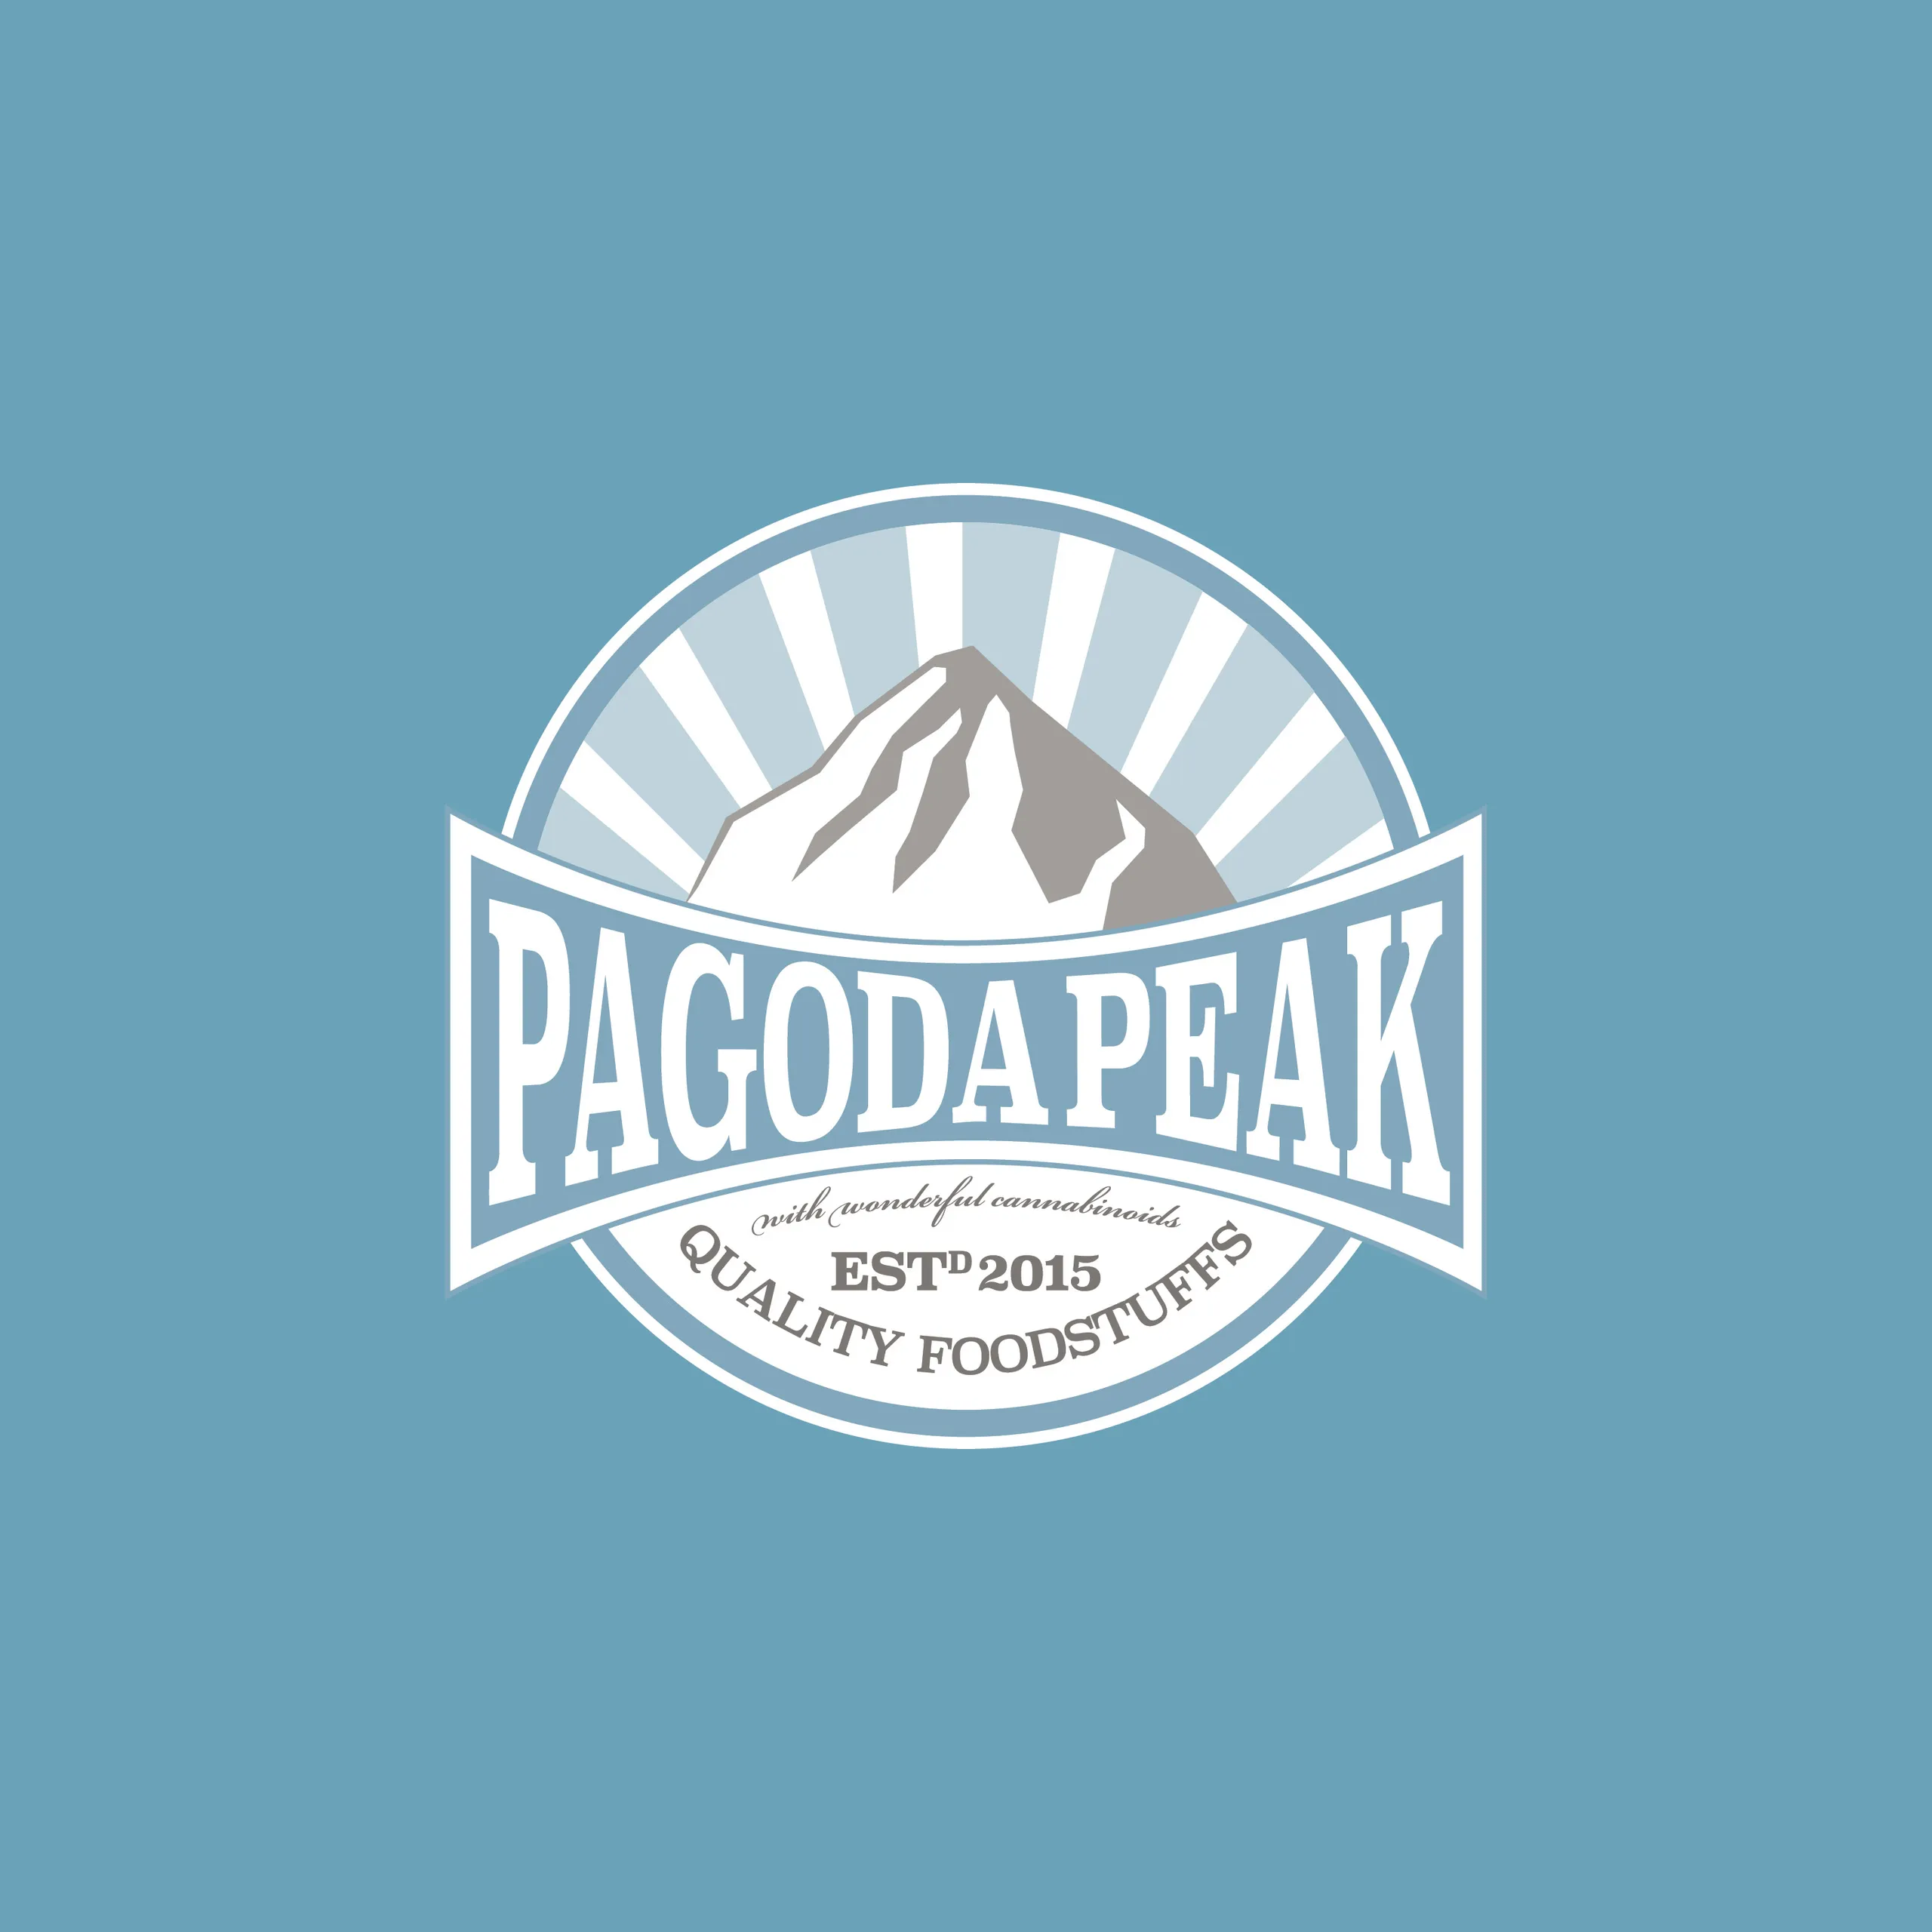 Pagoda Peak rondel logo in blue